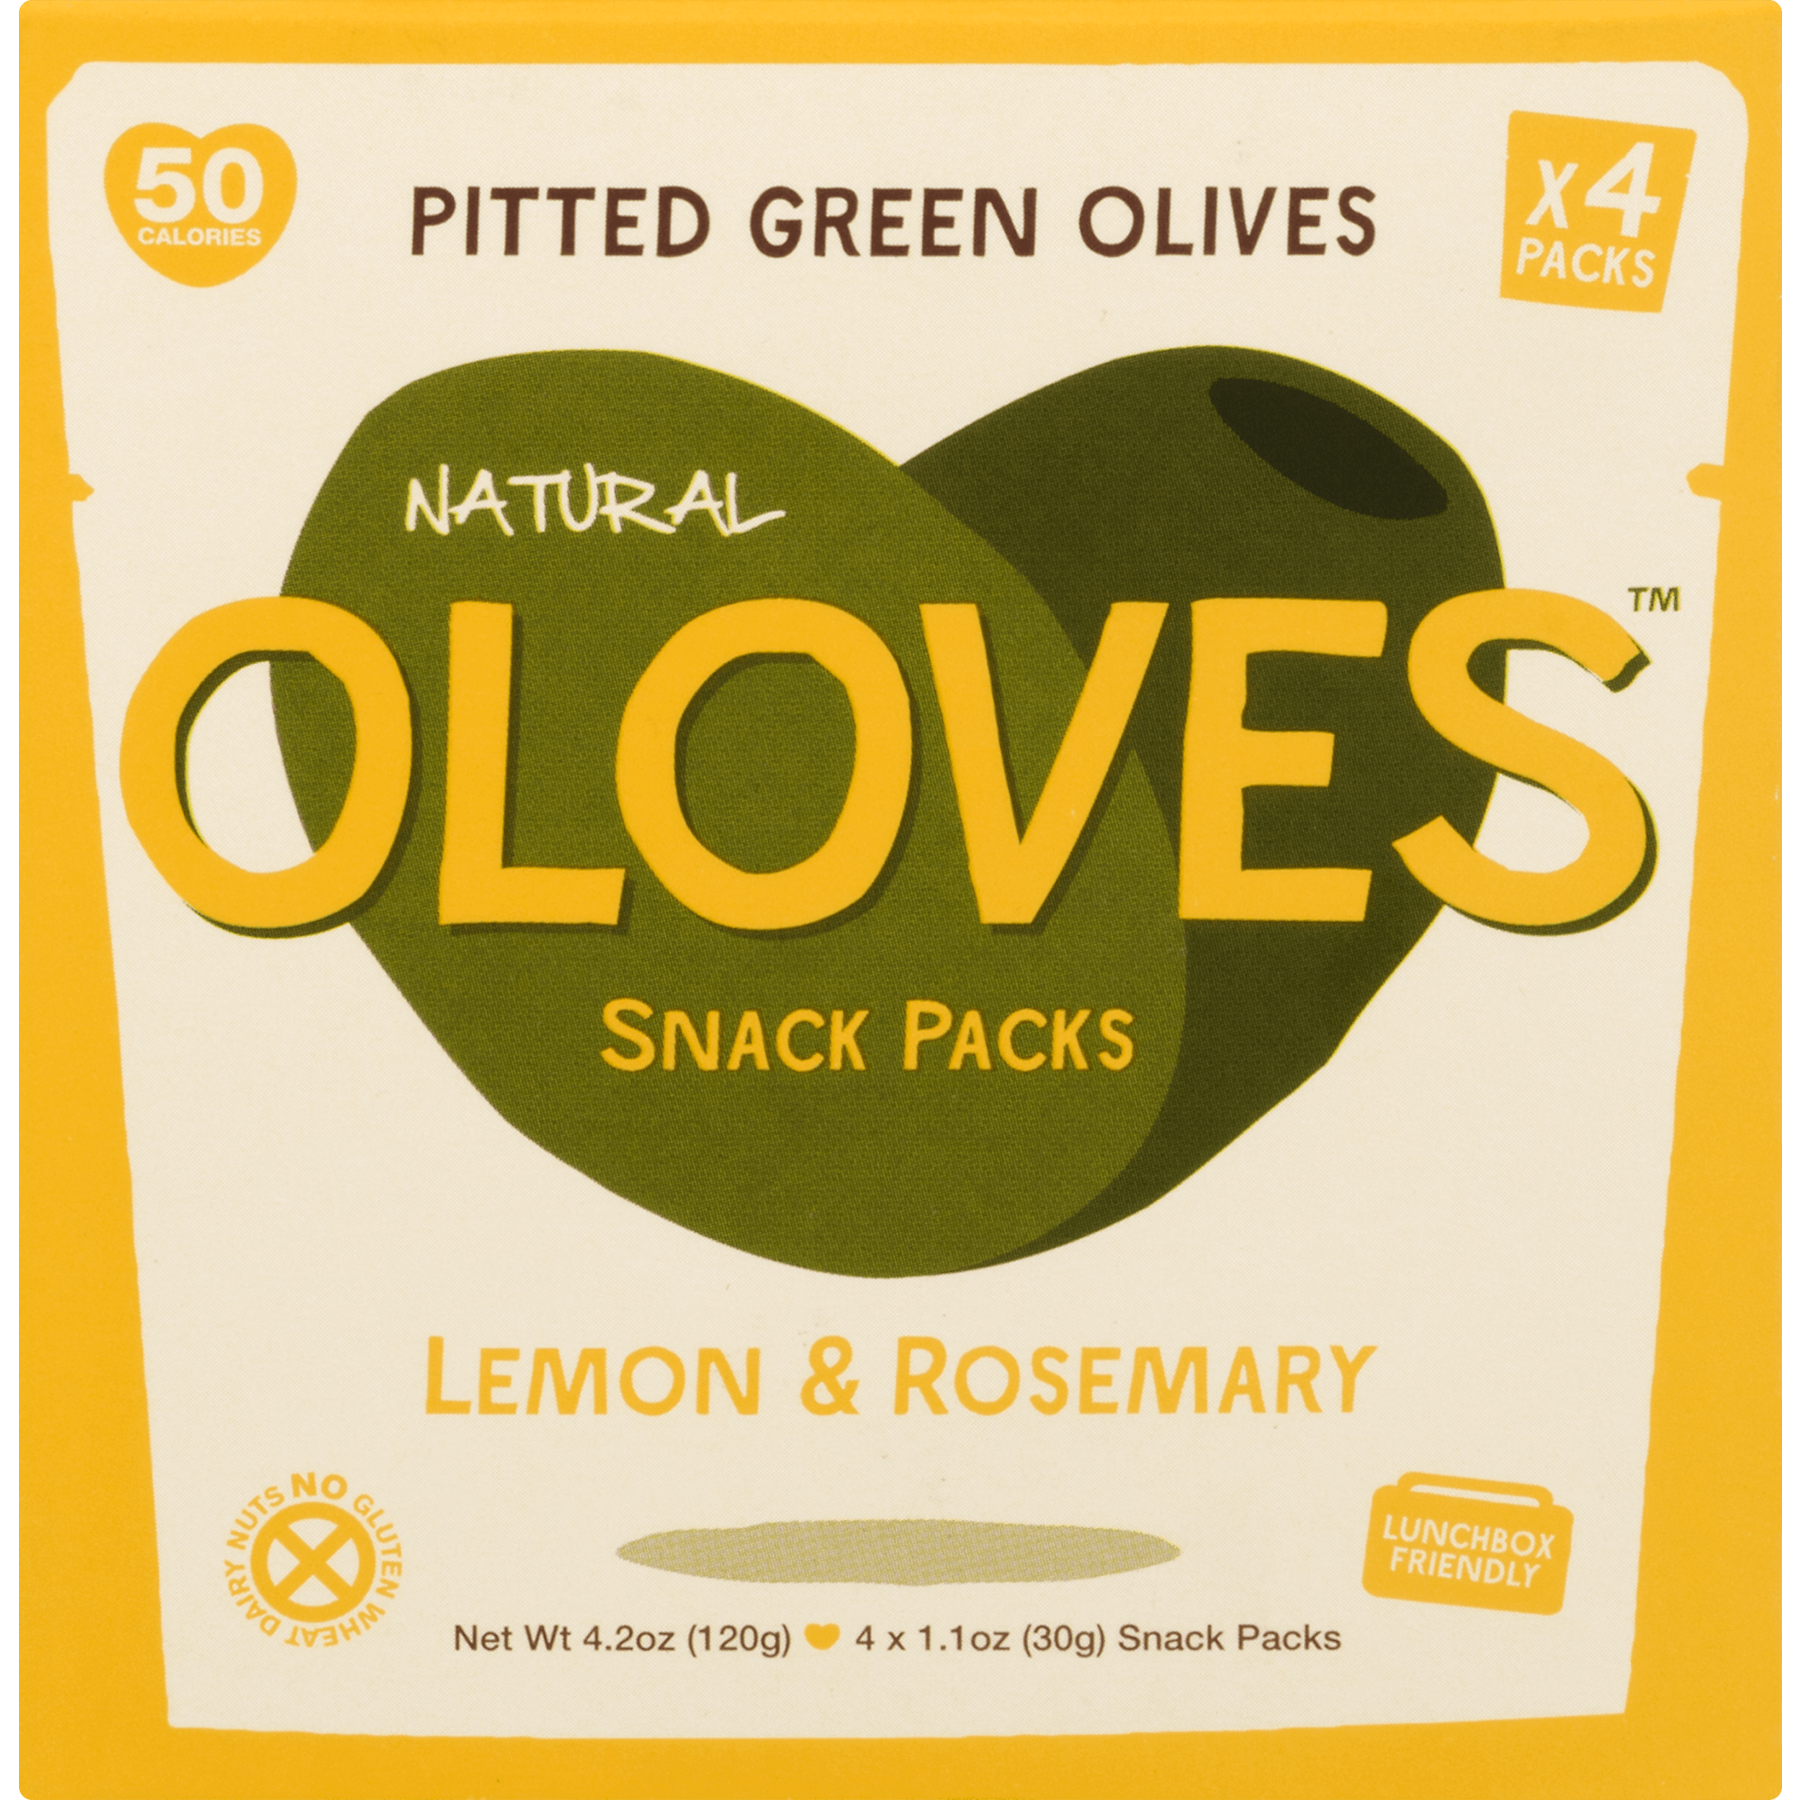 Oloves Pitted Green Olives Snack Packs Lemon & Rosemary - 4 CT1.1 OZ - image 4 of 6